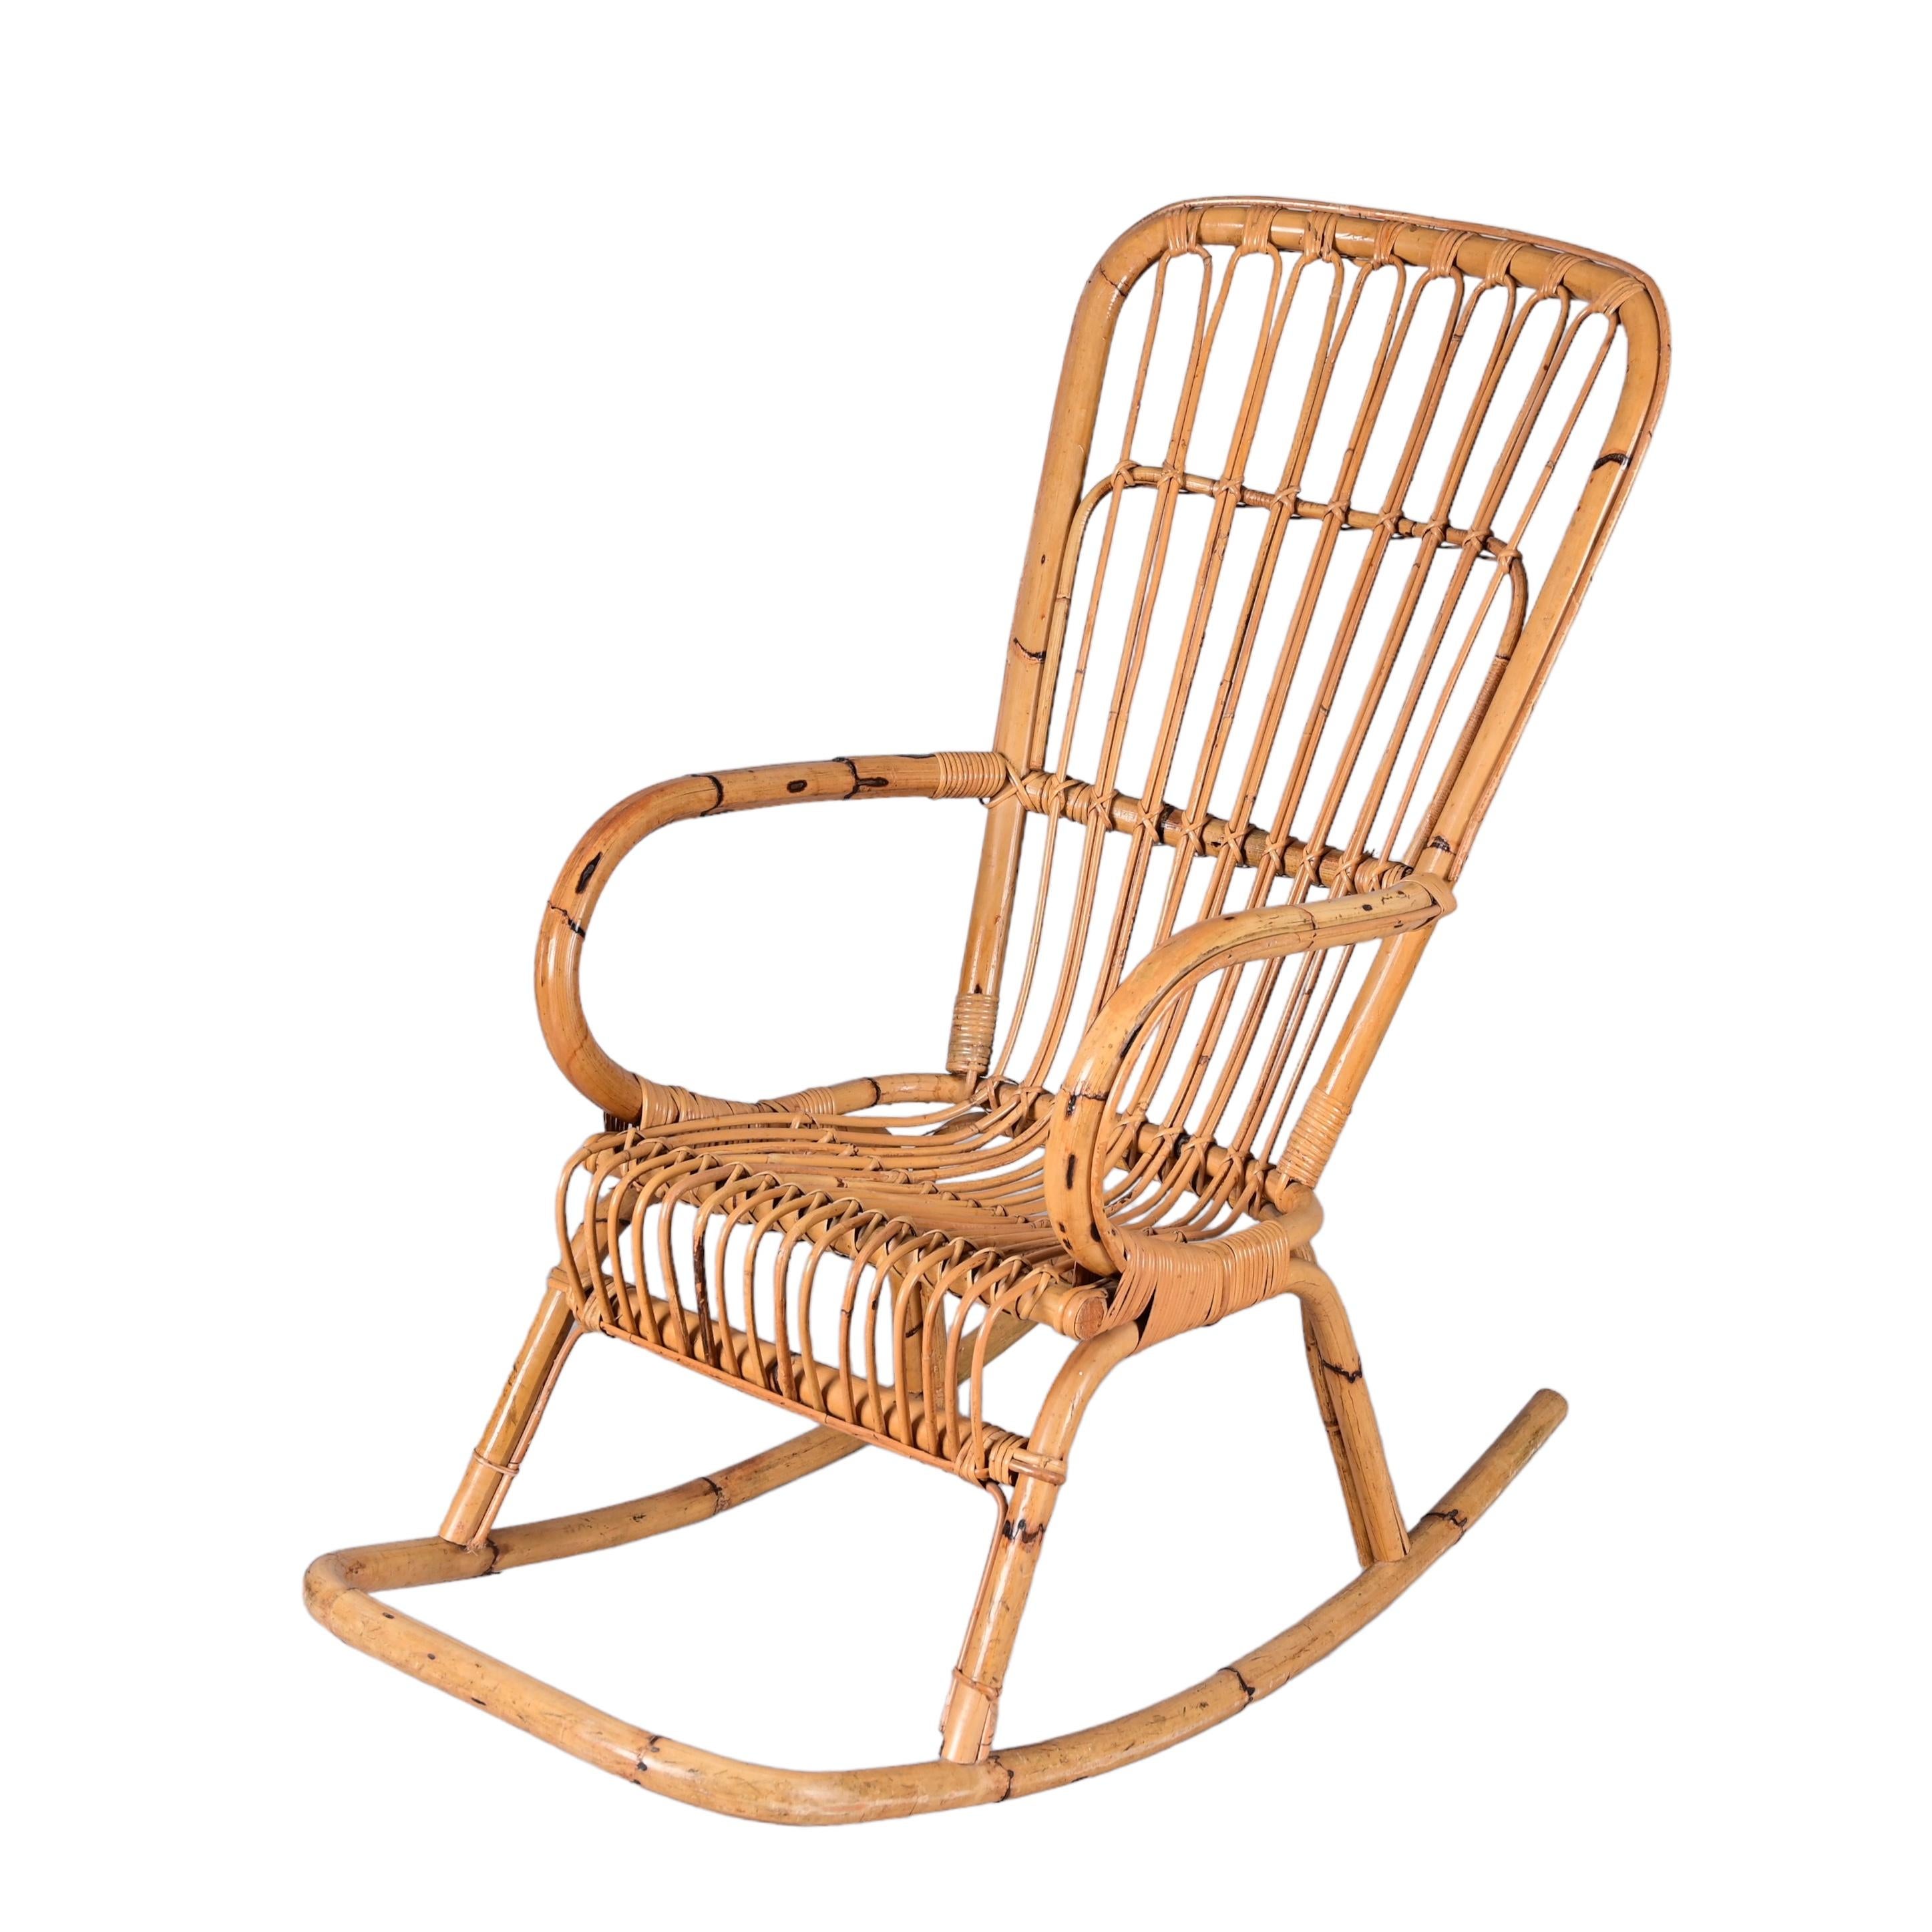 Elegant fauteuil à bascule de la Riviera française du milieu du siècle en rotin et bambou. Cette pièce fantastique a été conçue et fabriquée en Italie dans les années 1970.

Cette chaise est unique car elle présente des proportions parfaites : la